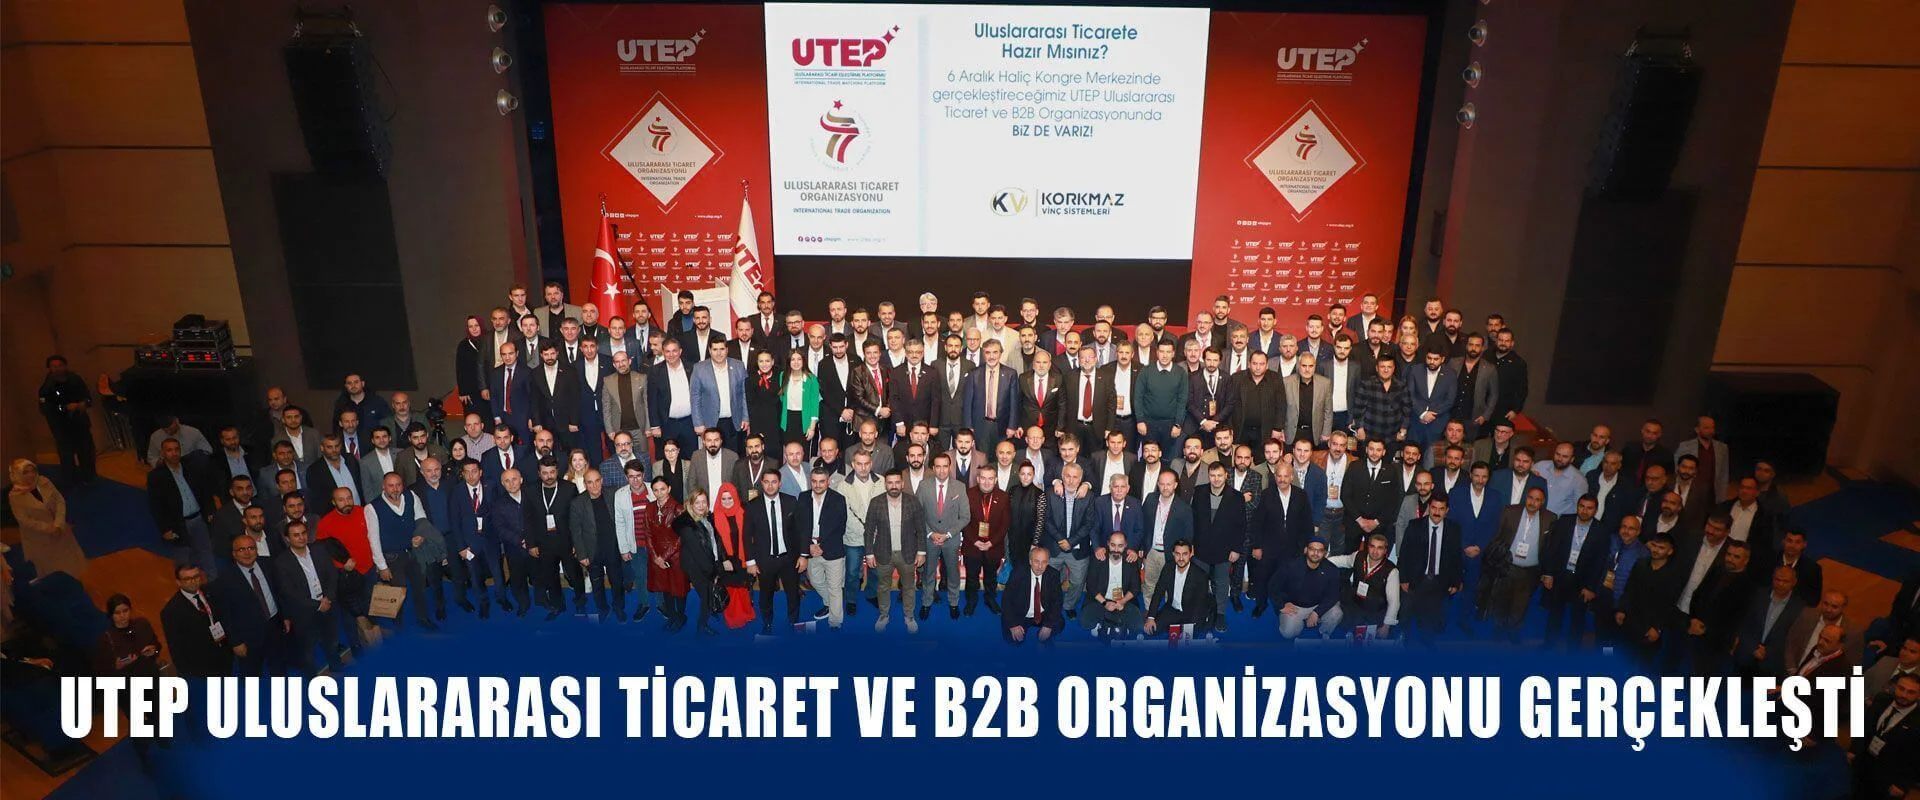 UTEP Uluslararası Ticaret ve B2B Organizasyonu Gerçekleşti